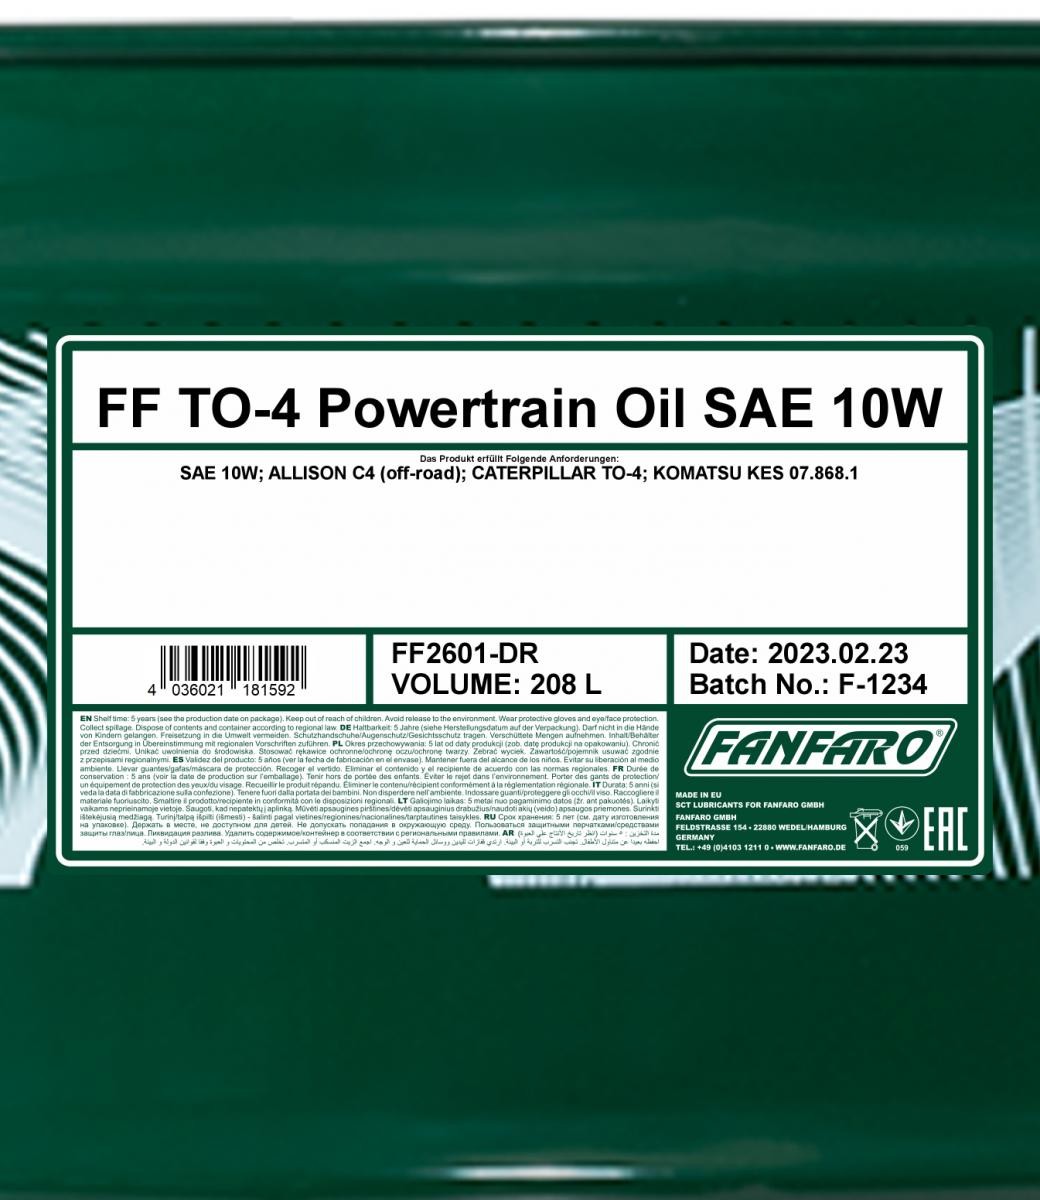 FANFARO Transmission oil FF2601-DR